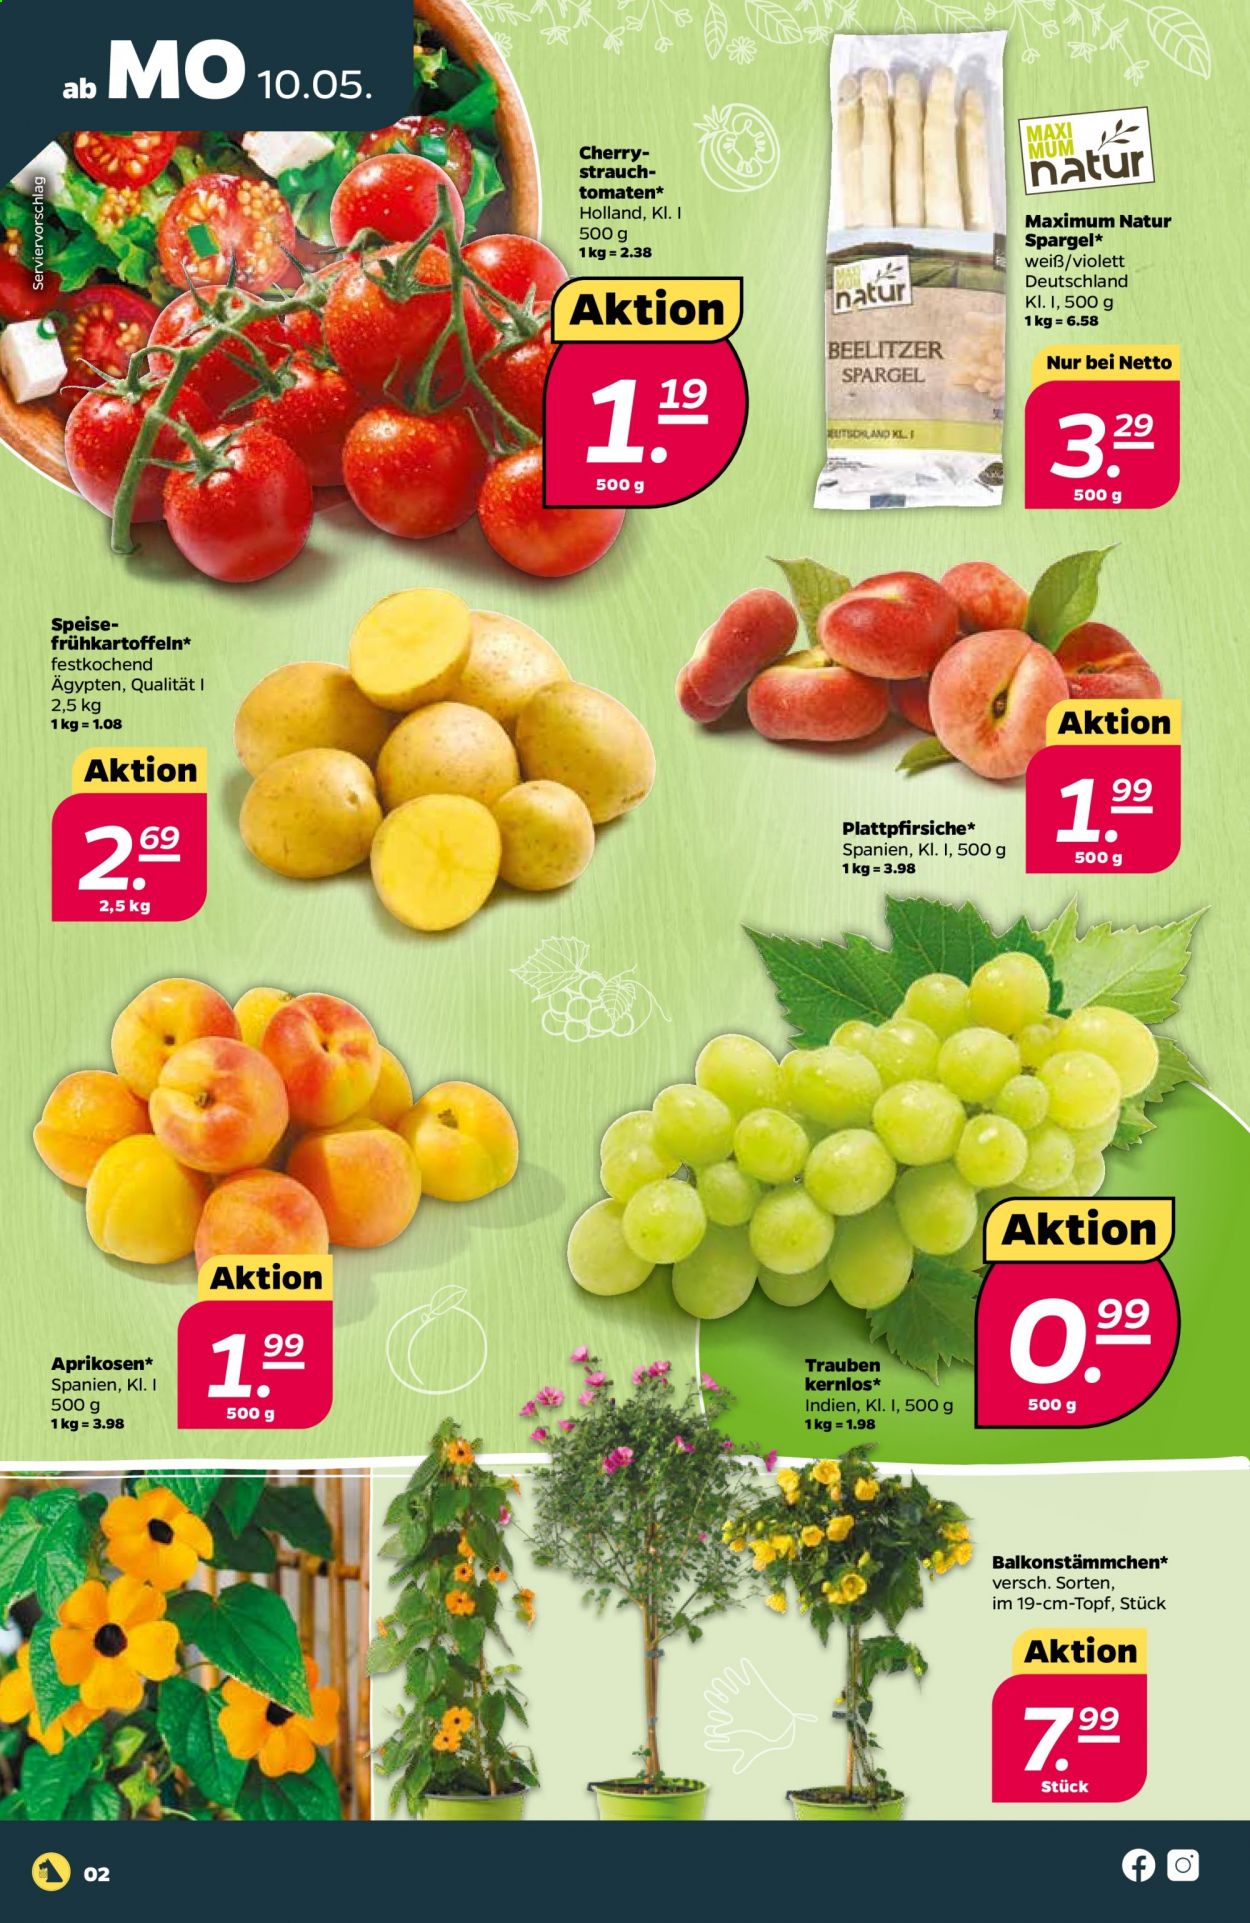 thumbnail - Prospekte Netto - 10.05.2021 - 15.05.2021 - Produkte in Aktion - Tomaten, Spargel, Trauben, Aprikosen, Plattpfirsiche, Topf. Seite 2.